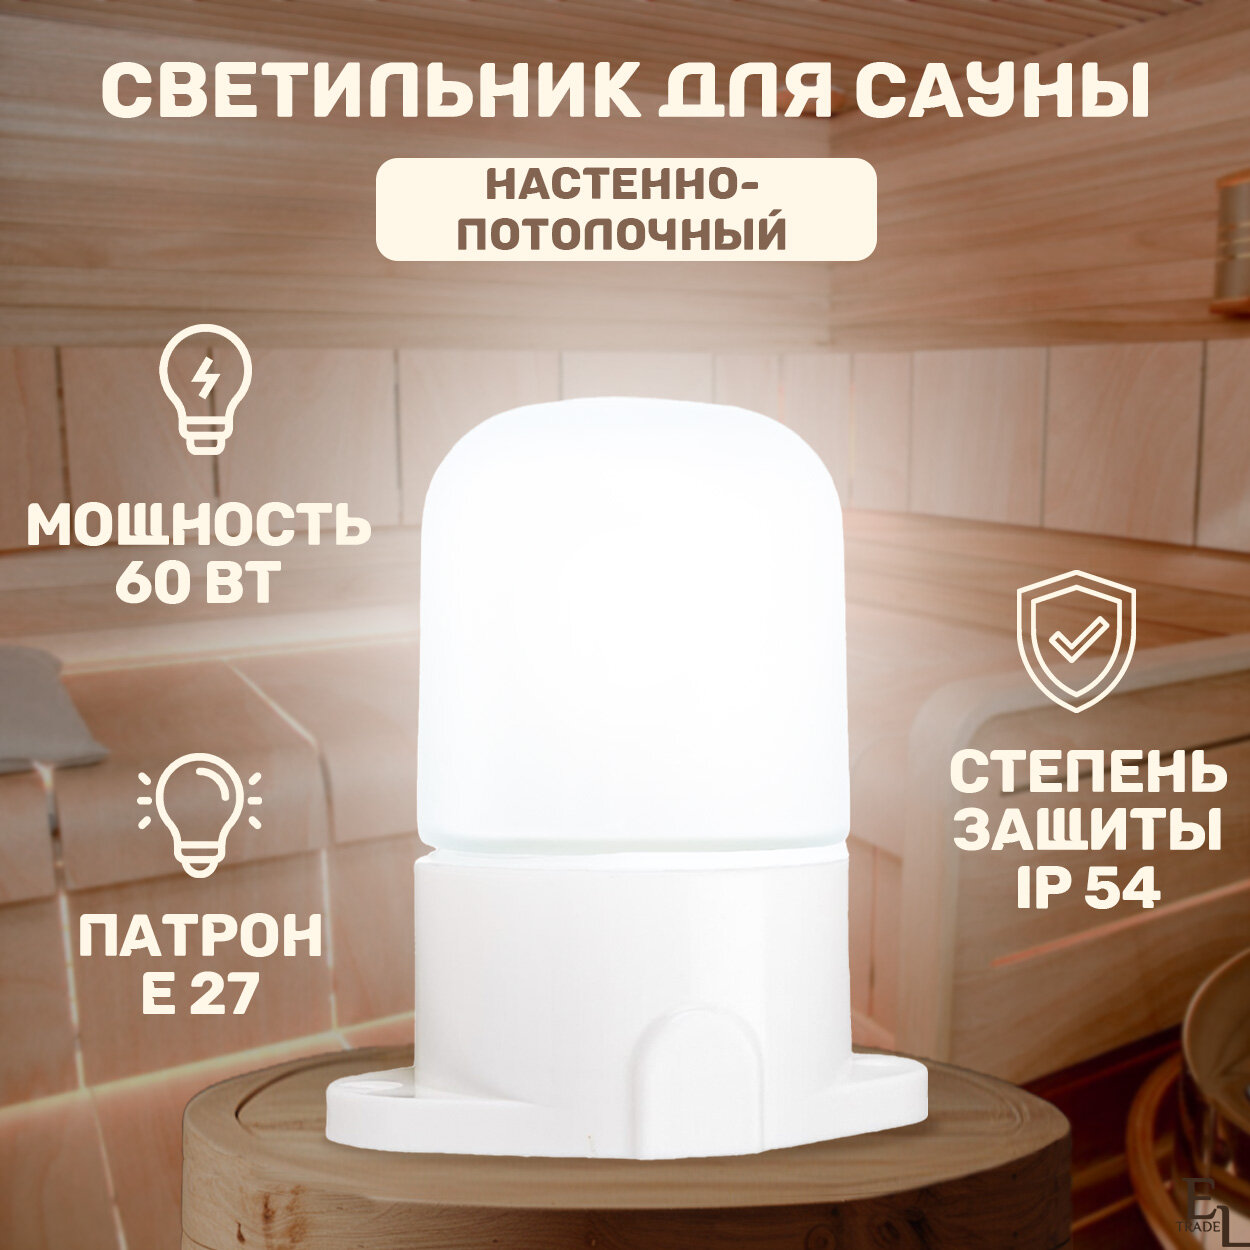 Светильник для сауны настенно-потолочный (137х110 мм, 60 Вт, Е27, IP54)